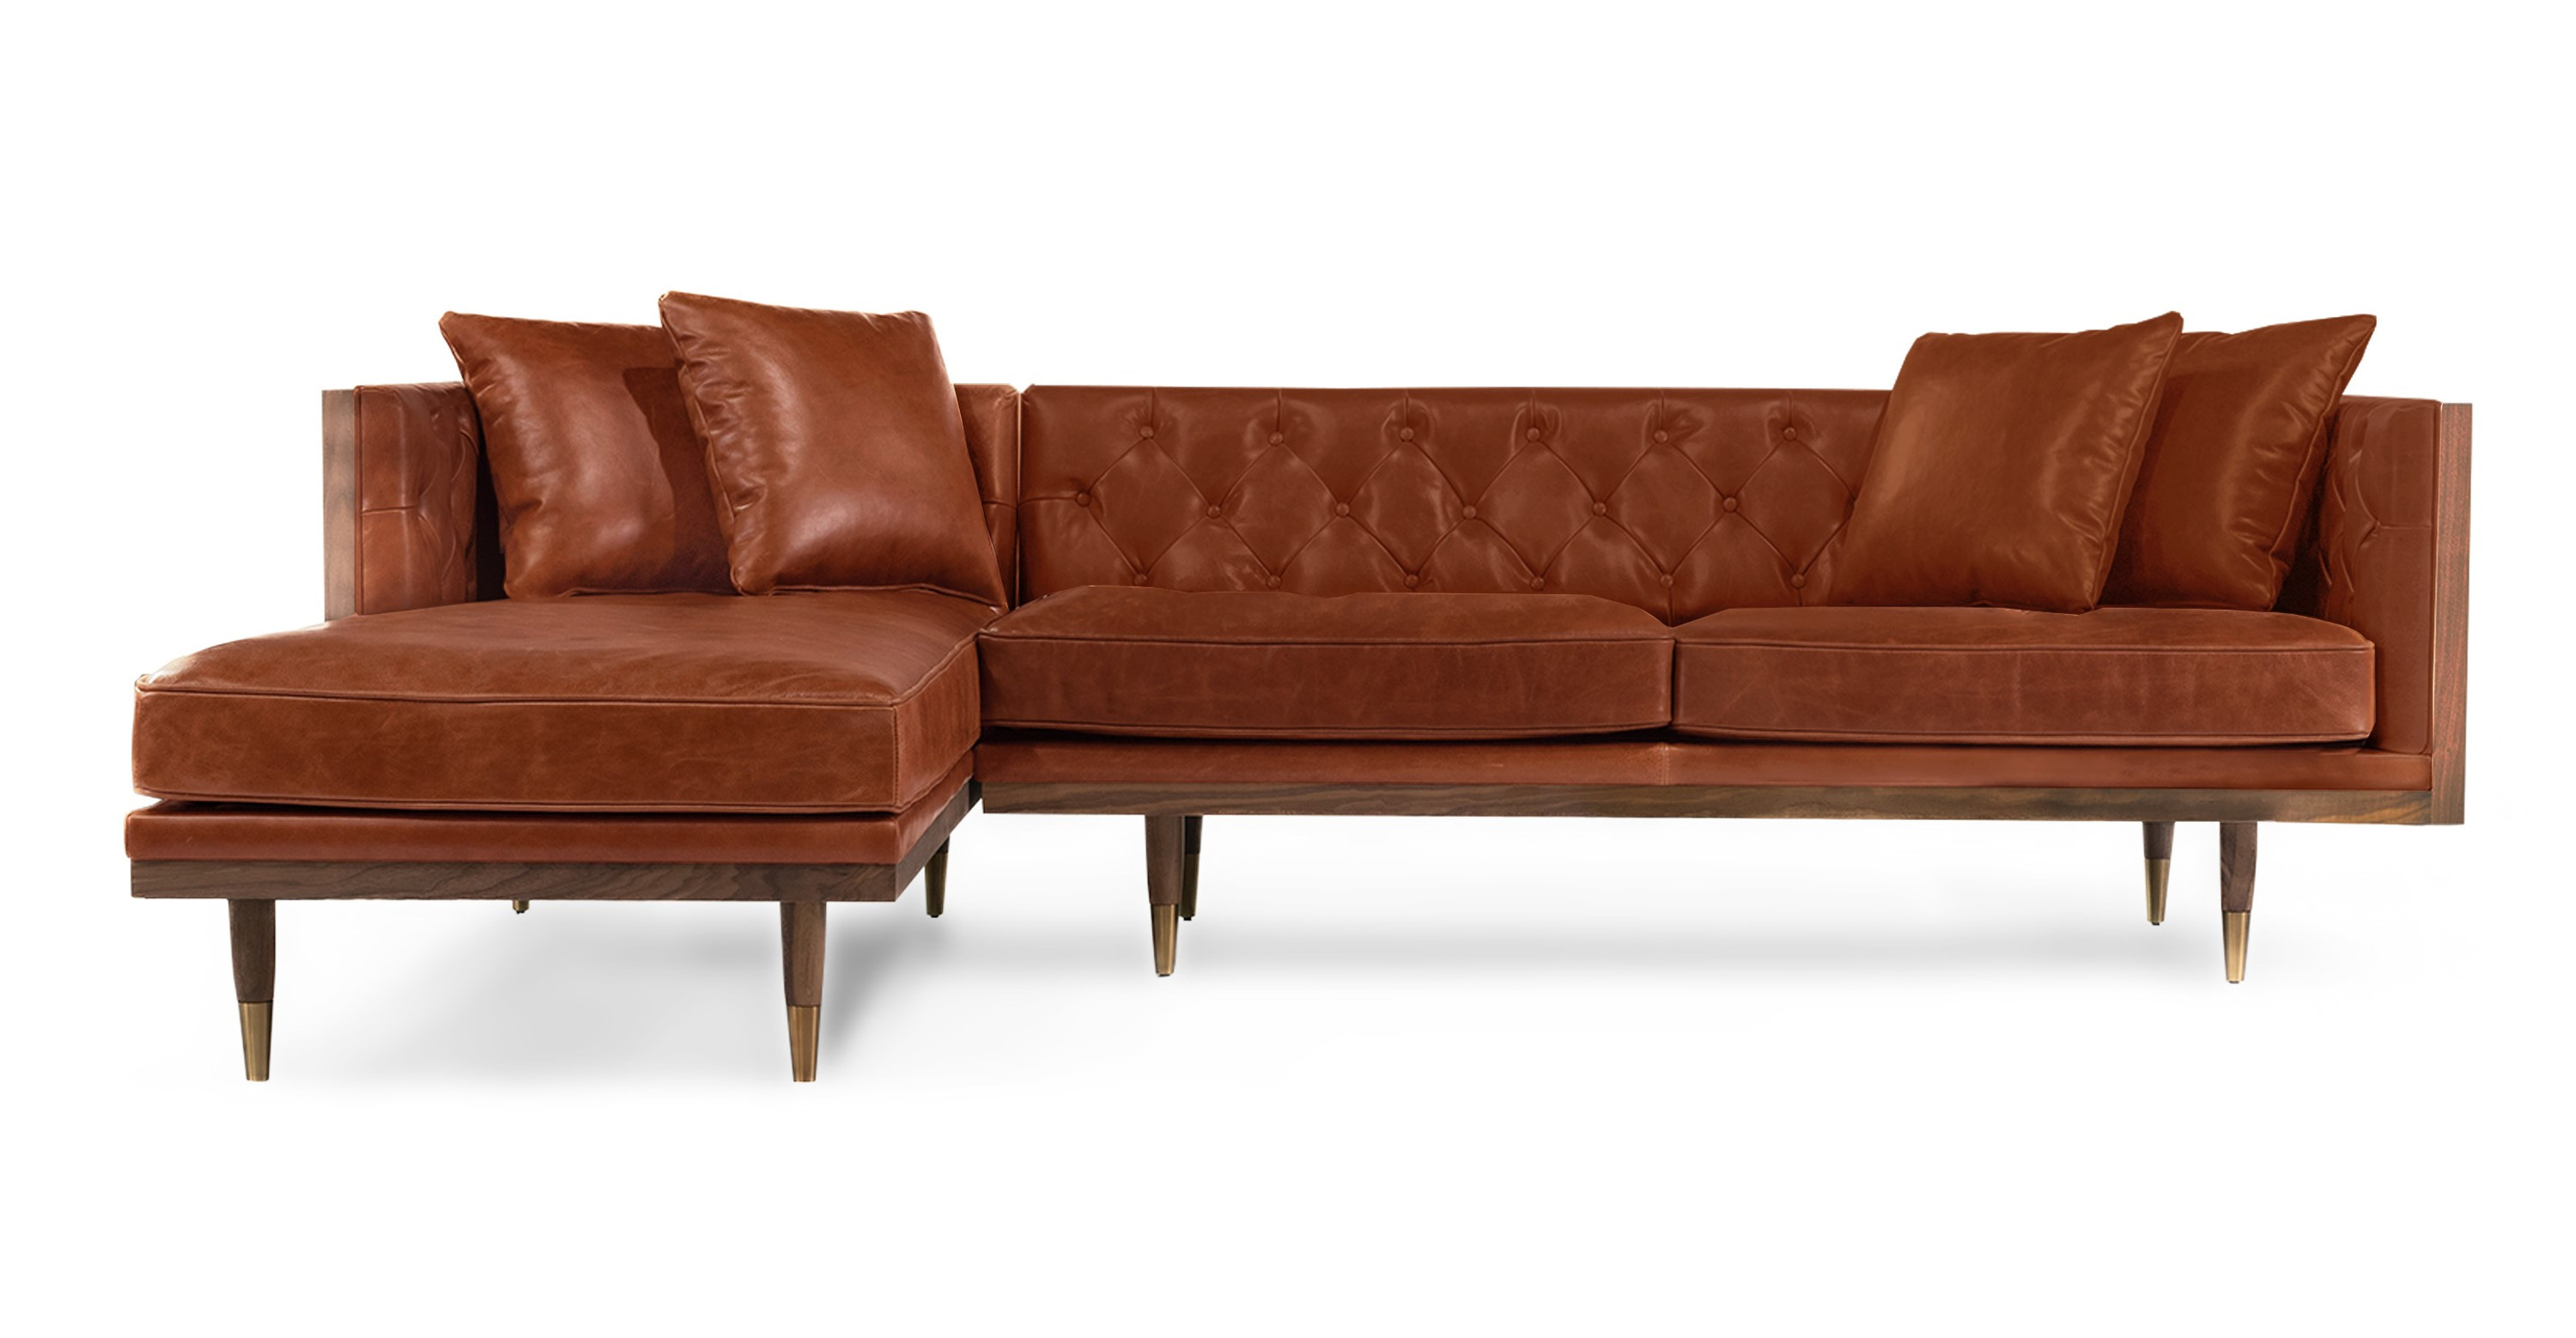 Woodrow Box 100 Leather Sofa Sectional Left, Walnut/White Aniline - Kardiel